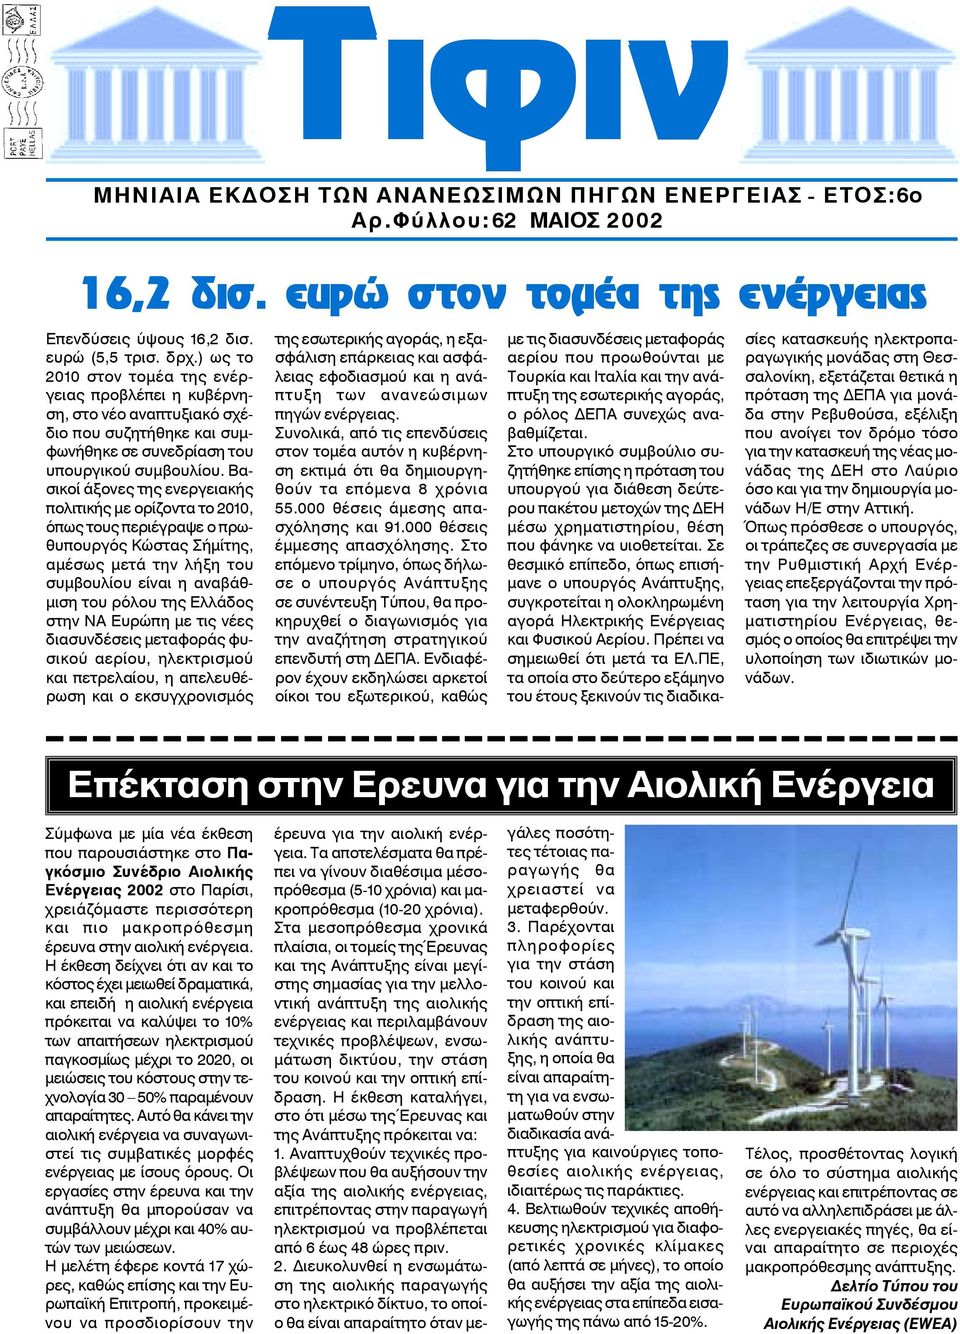 Βασικοί άξονες της ενεργειακής πολιτικής με ορίζοντα το 2010, όπως τους περιέγραψε ο πρωθυπουργός Κώστας Σήμίτης, αμέσως μετά την λήξη του συμβουλίου είναι η αναβάθμιση του ρόλου της Ελλάδος στην ΝΑ